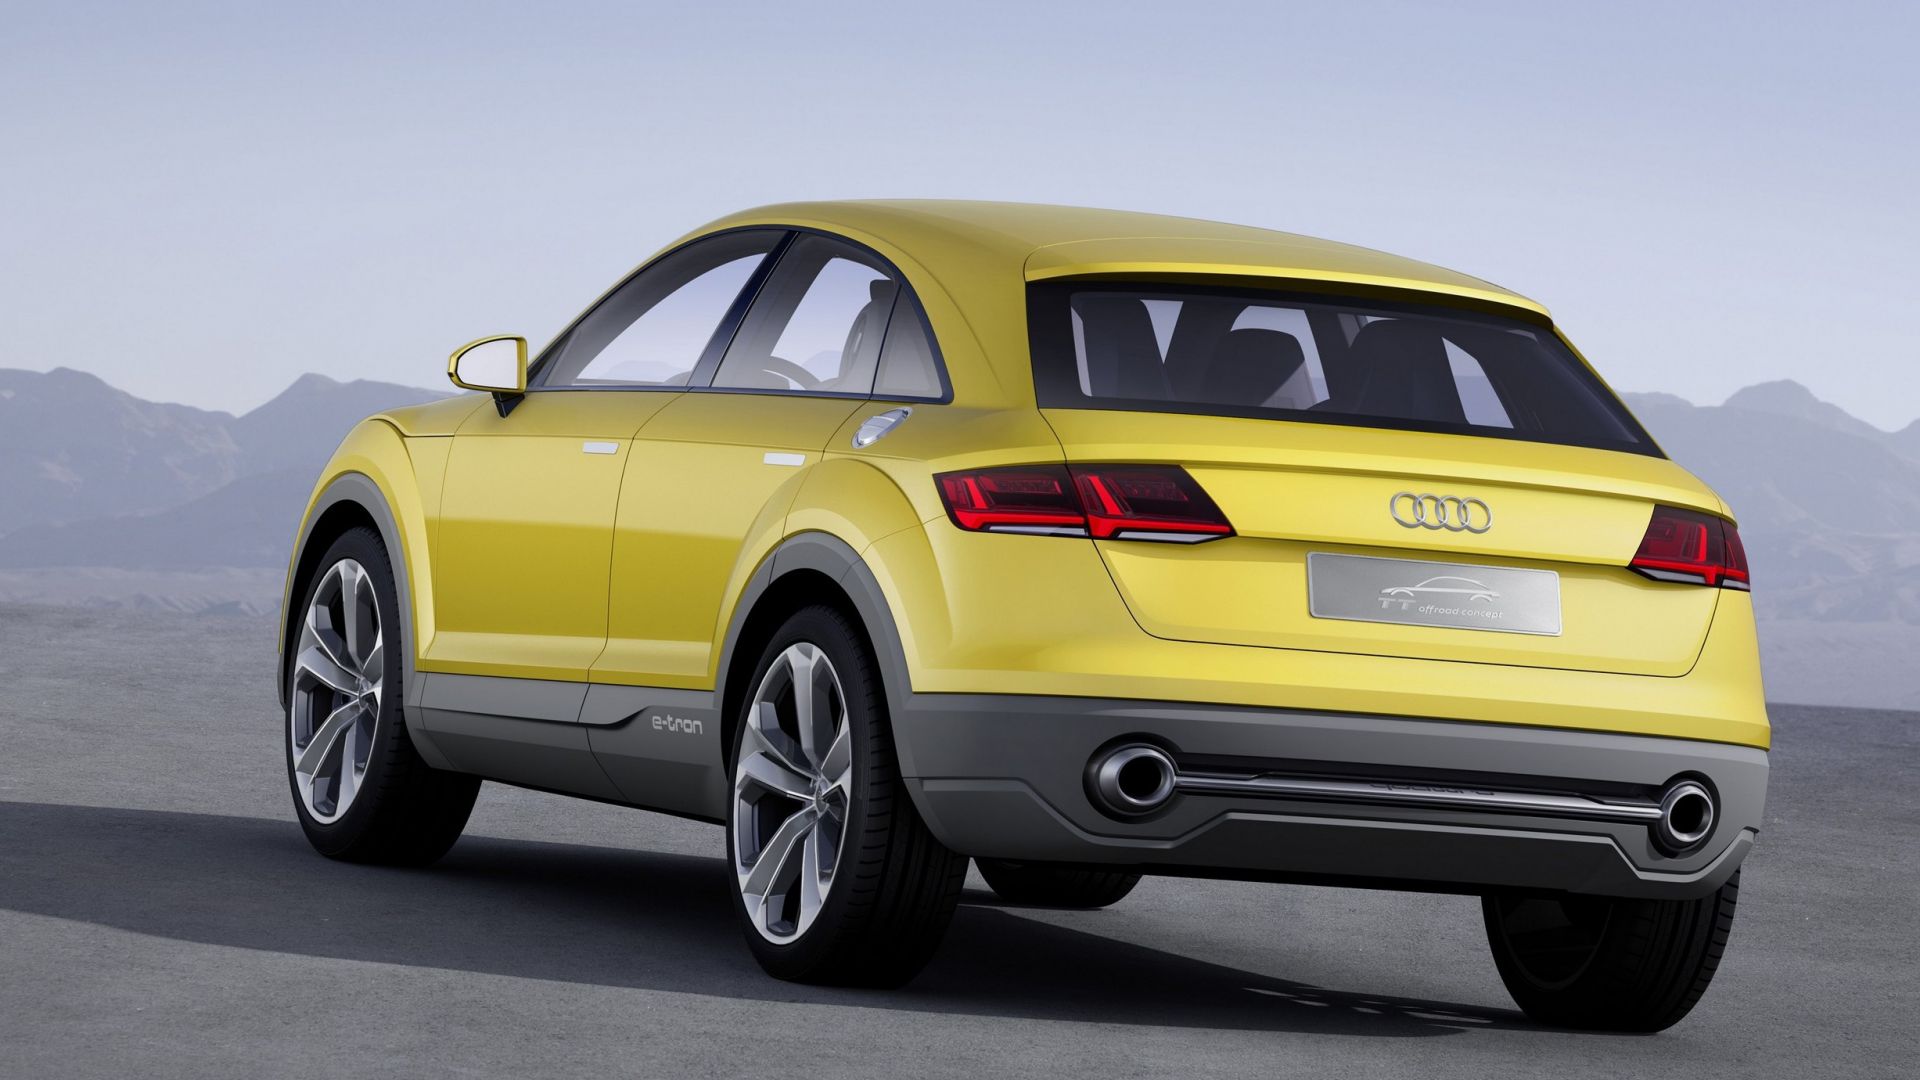 Novità auto: Audi, nuovi suv nel futuro: nel 2019 arriverà la Q4 - MotorBox